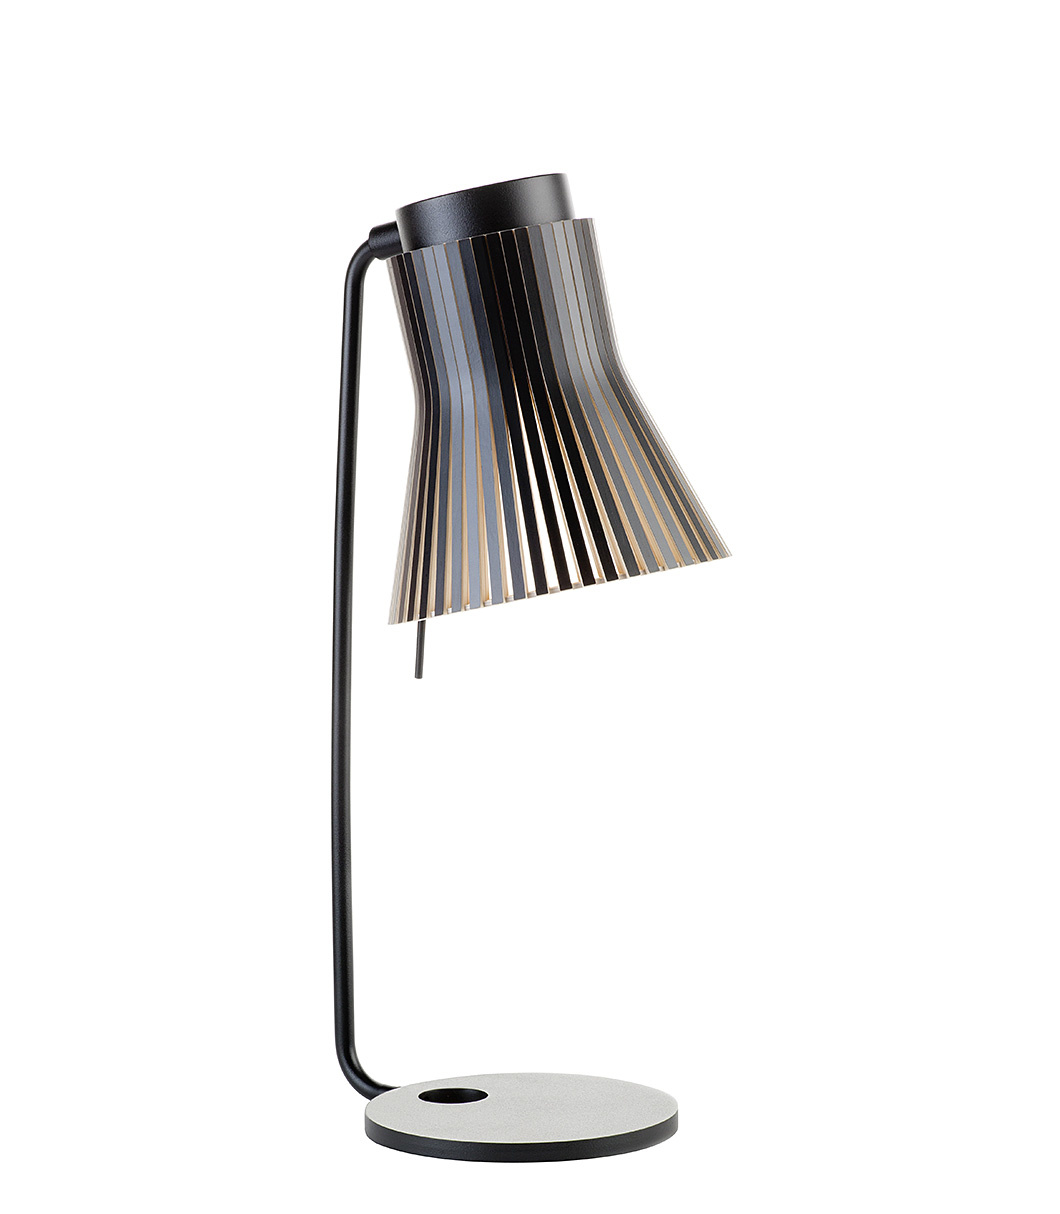 Lampe de table Petite 4620 est disponible en stratifié noir